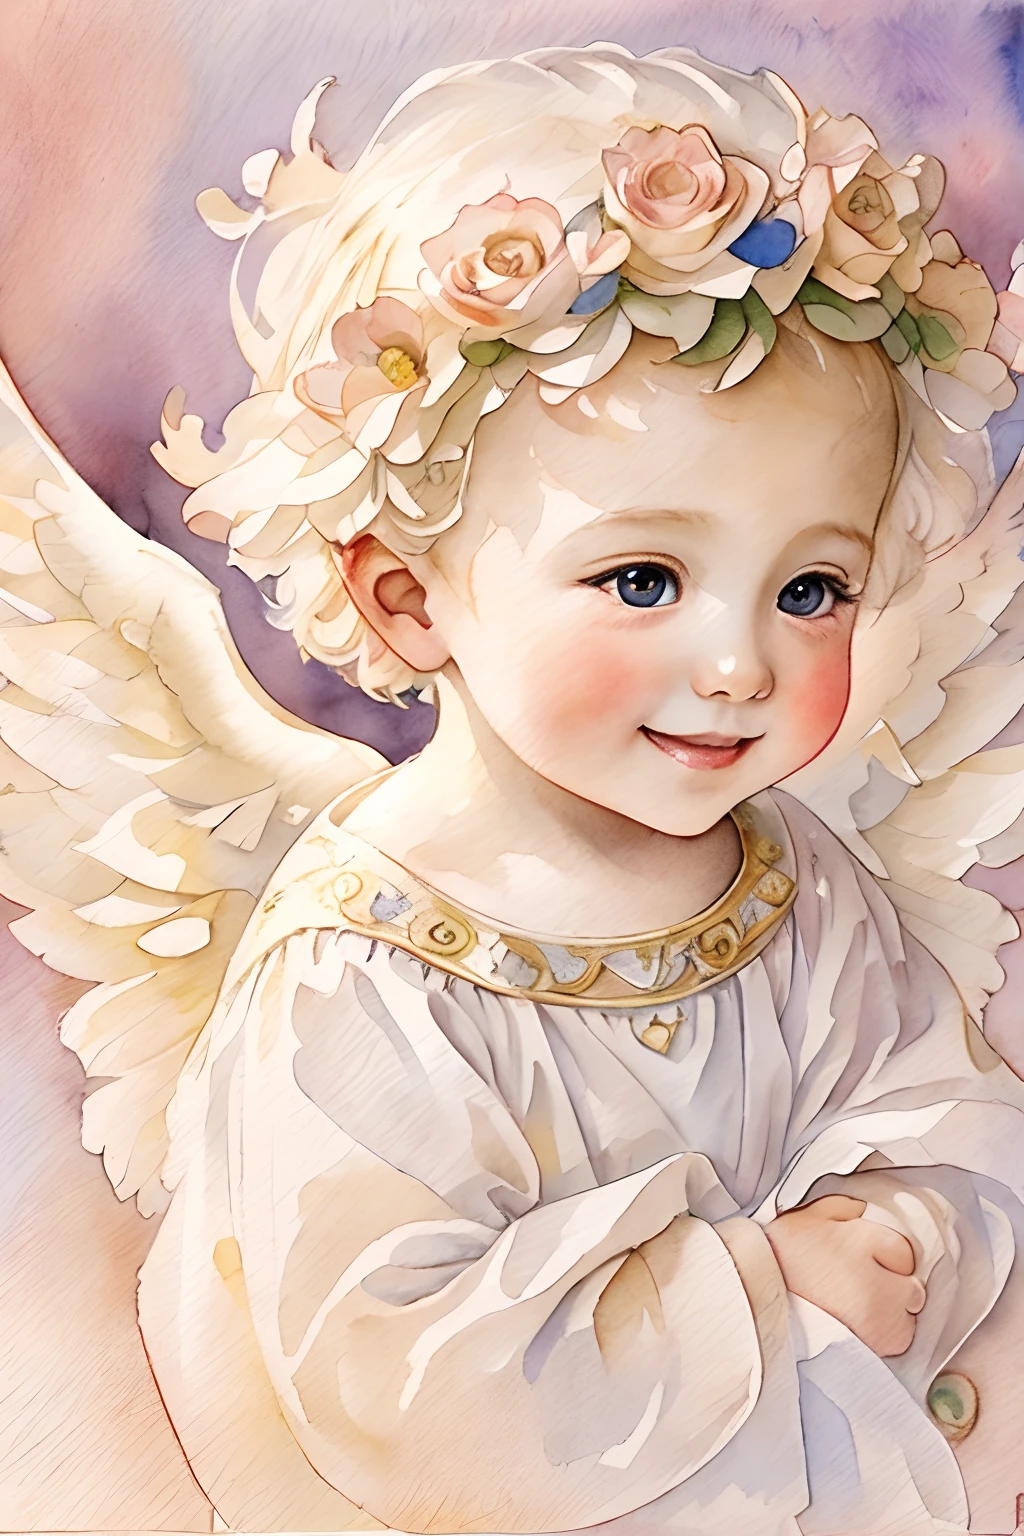 Bendiciones de los ángeles､fondo brillante、marca del corazon、sensibilidad､Una sonrisa、amable､Ángel bebé､Art Nouveau、pintura de acuarela